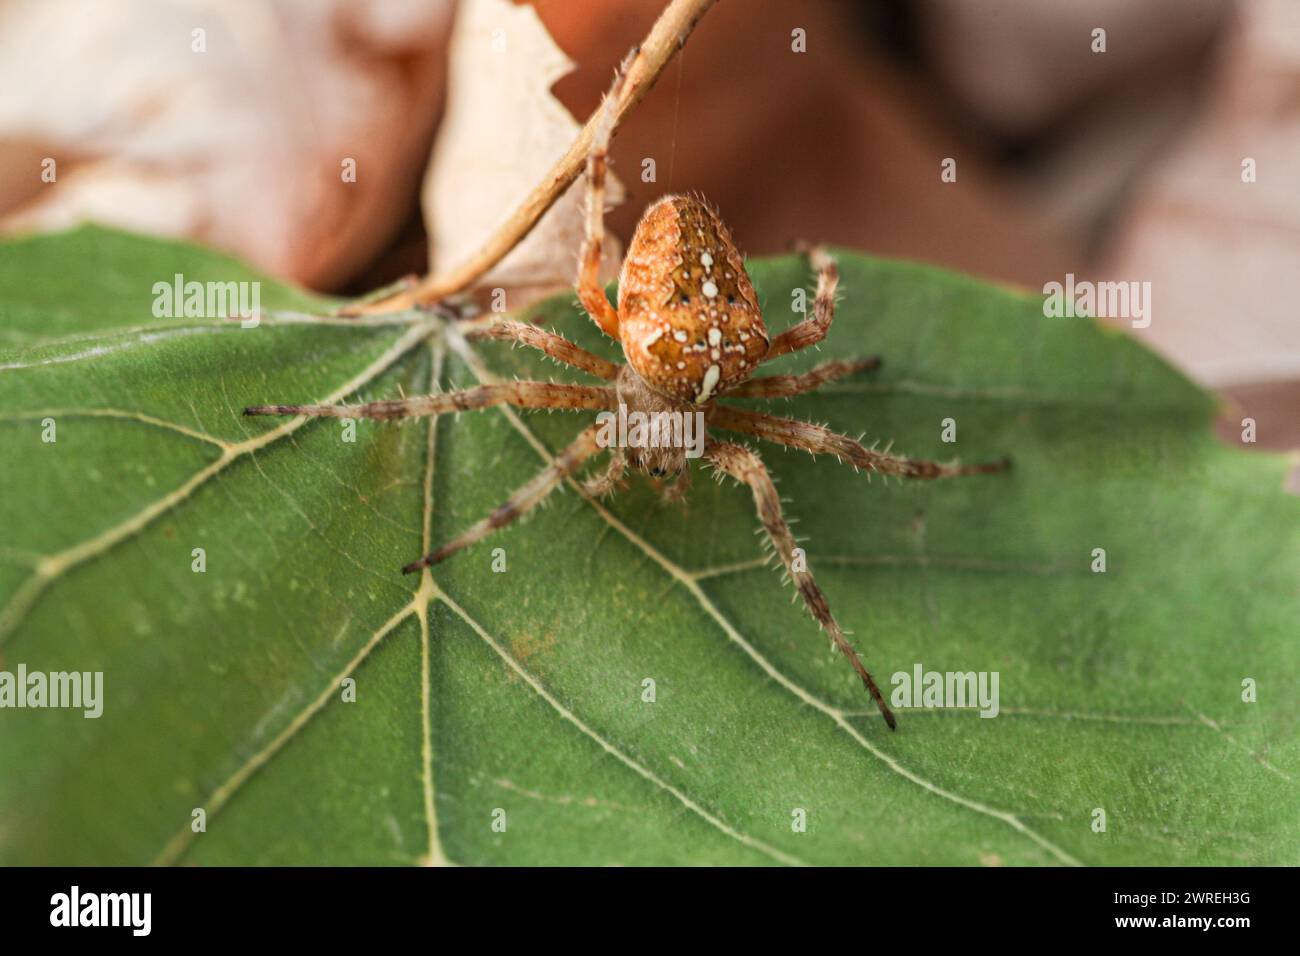 Un ragno catturato in un giorno d'autunno su una foglia verde, la sua specie è chiamata araneus diadematus. Foto di alta qualità Foto Stock